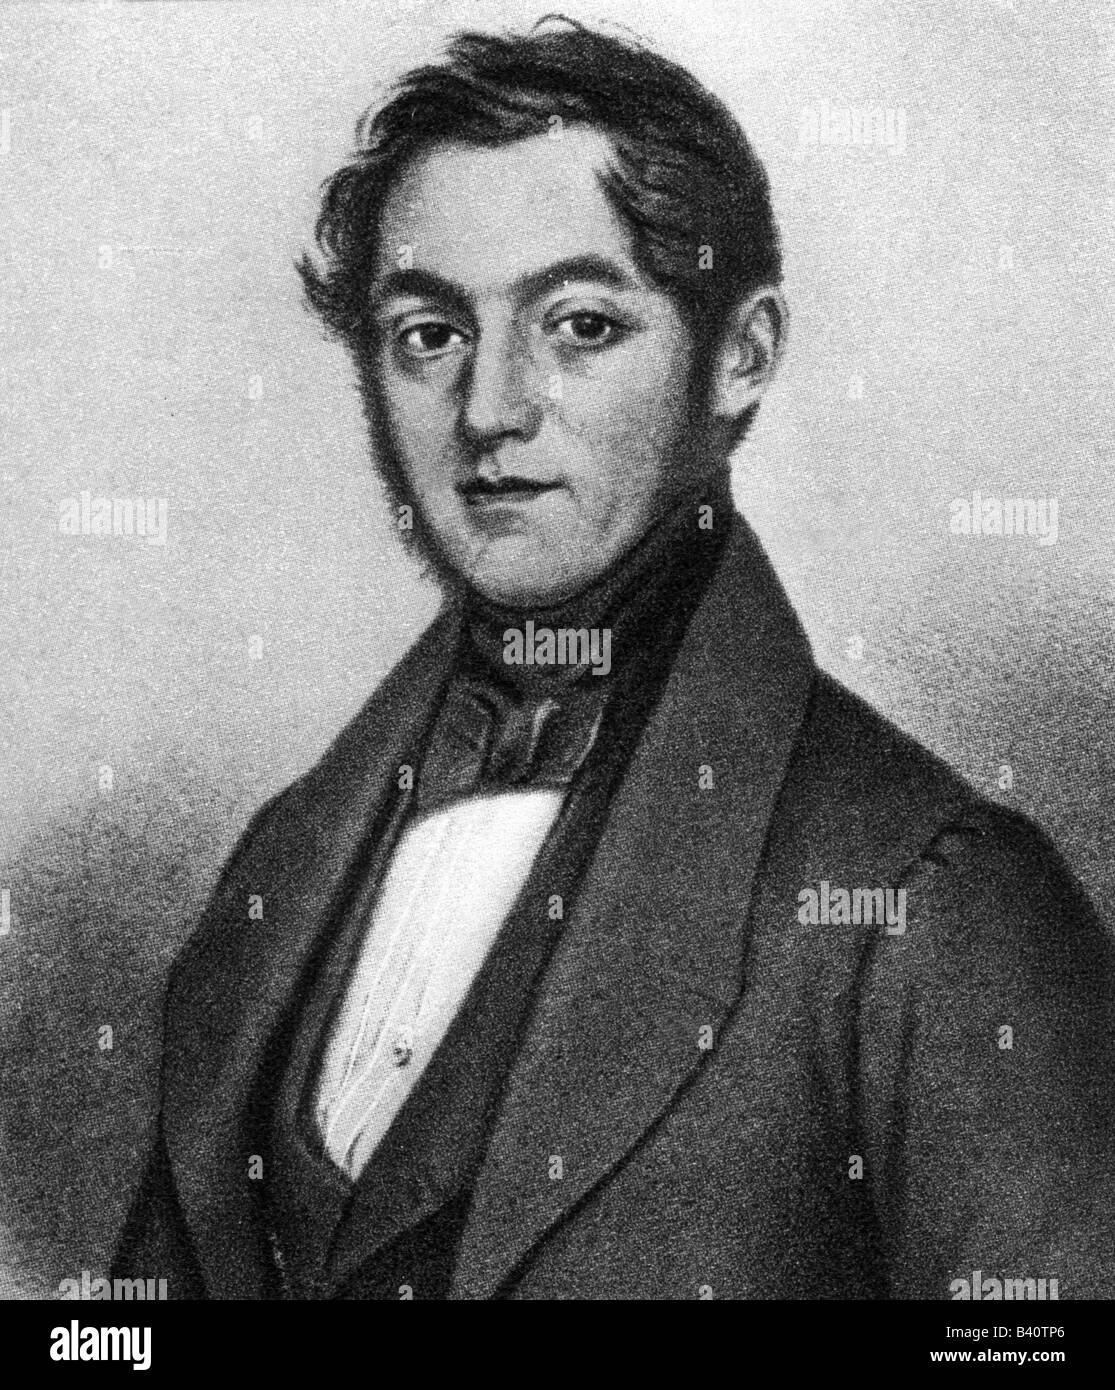 Dorn, Heinrich, 14.11.1804 - 10.1.1892, del compositore tedesco, ritratto, acciaio, incisione del XIX secolo, l'artista del diritto d'autore non deve essere cancellata Foto Stock